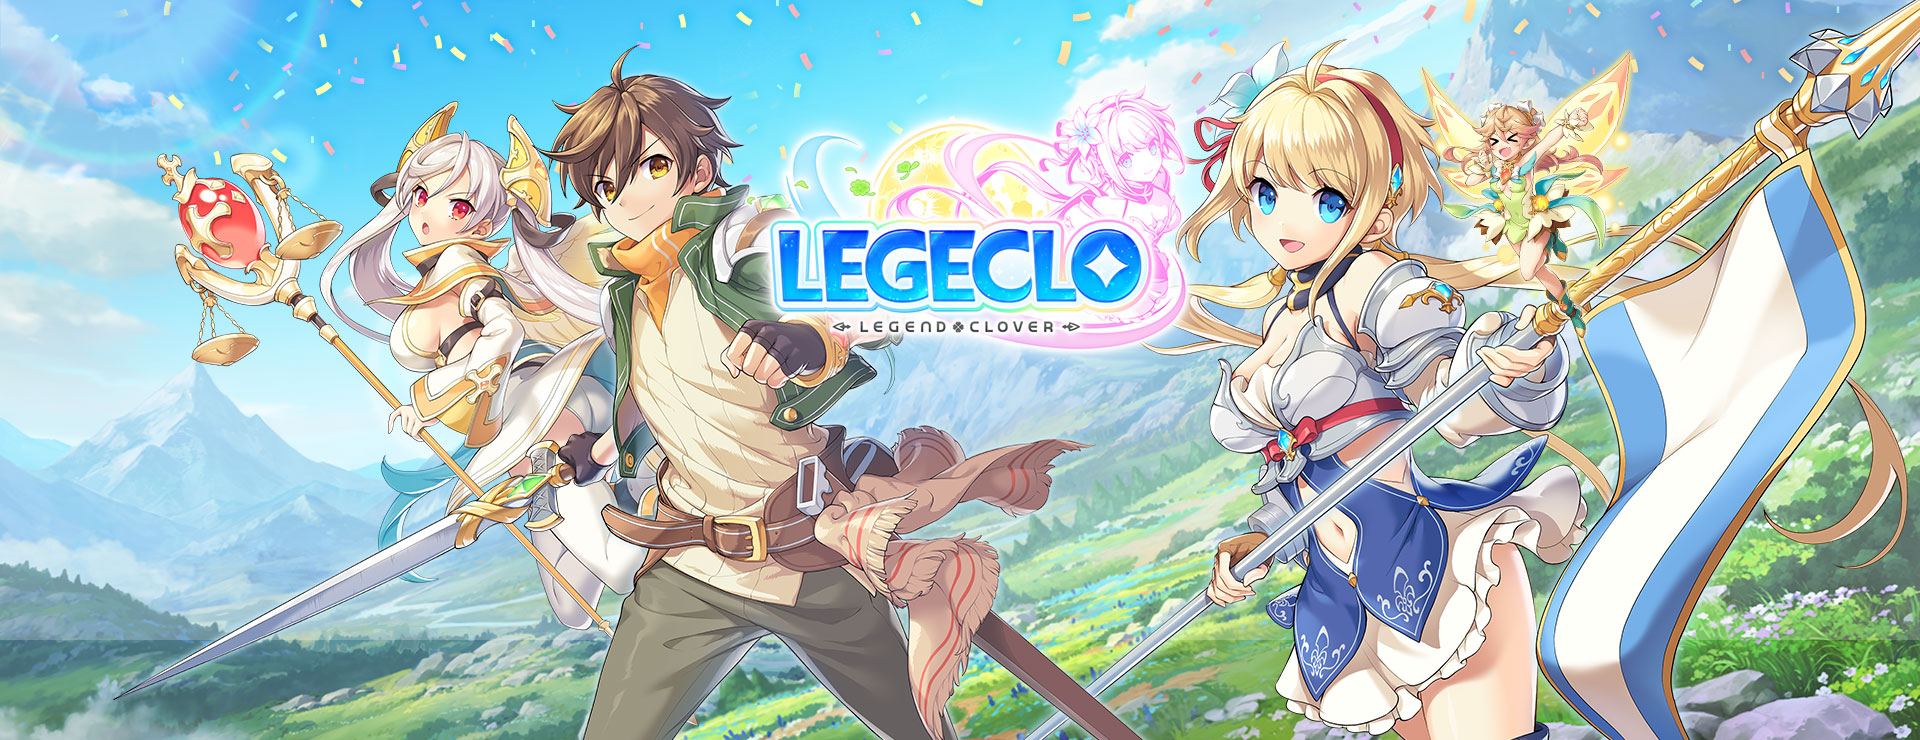 Legeclo: Legend Clover - Turn Based RPG Game